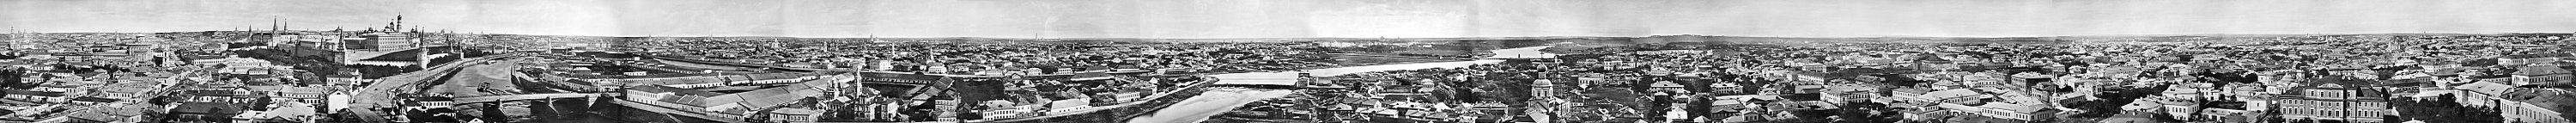 Մոսկվայի տեսքը 1867 թվականին։ Սեղմեք այստեղ, որպեսզի տեսնեք նշումներով պատկերը։